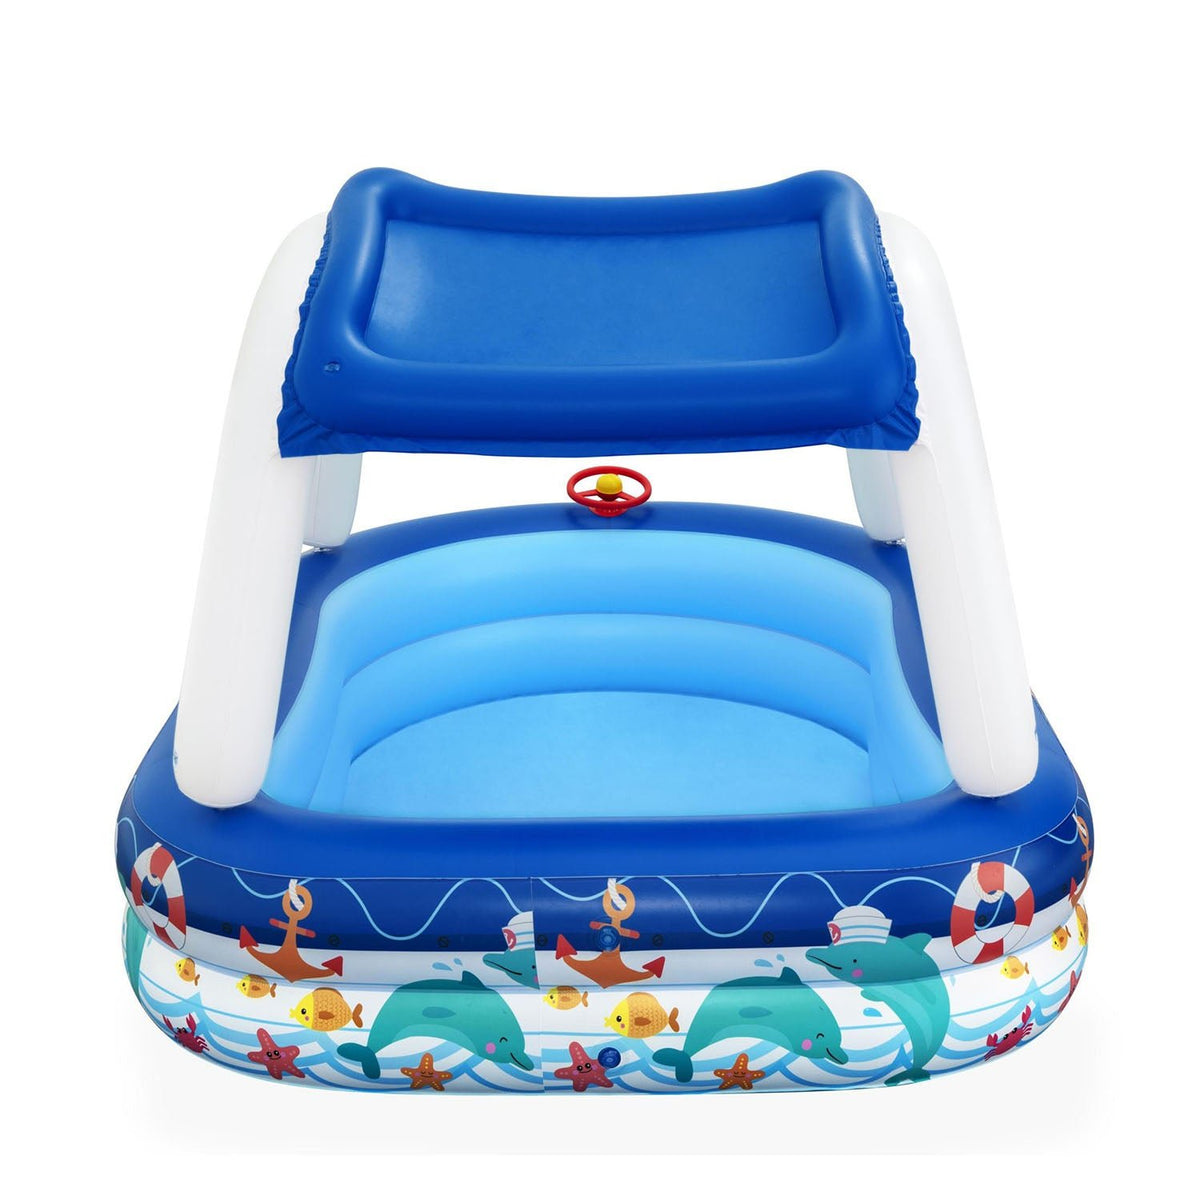 Bestway H2OGO! Sea Captain Family Pool with UV Sunshade, Bestway H2OGO! pool, inflatable kiddie pool, small backyard pool for kids, sea captain inflatable swimming pool, inflatable above ground swimming pool